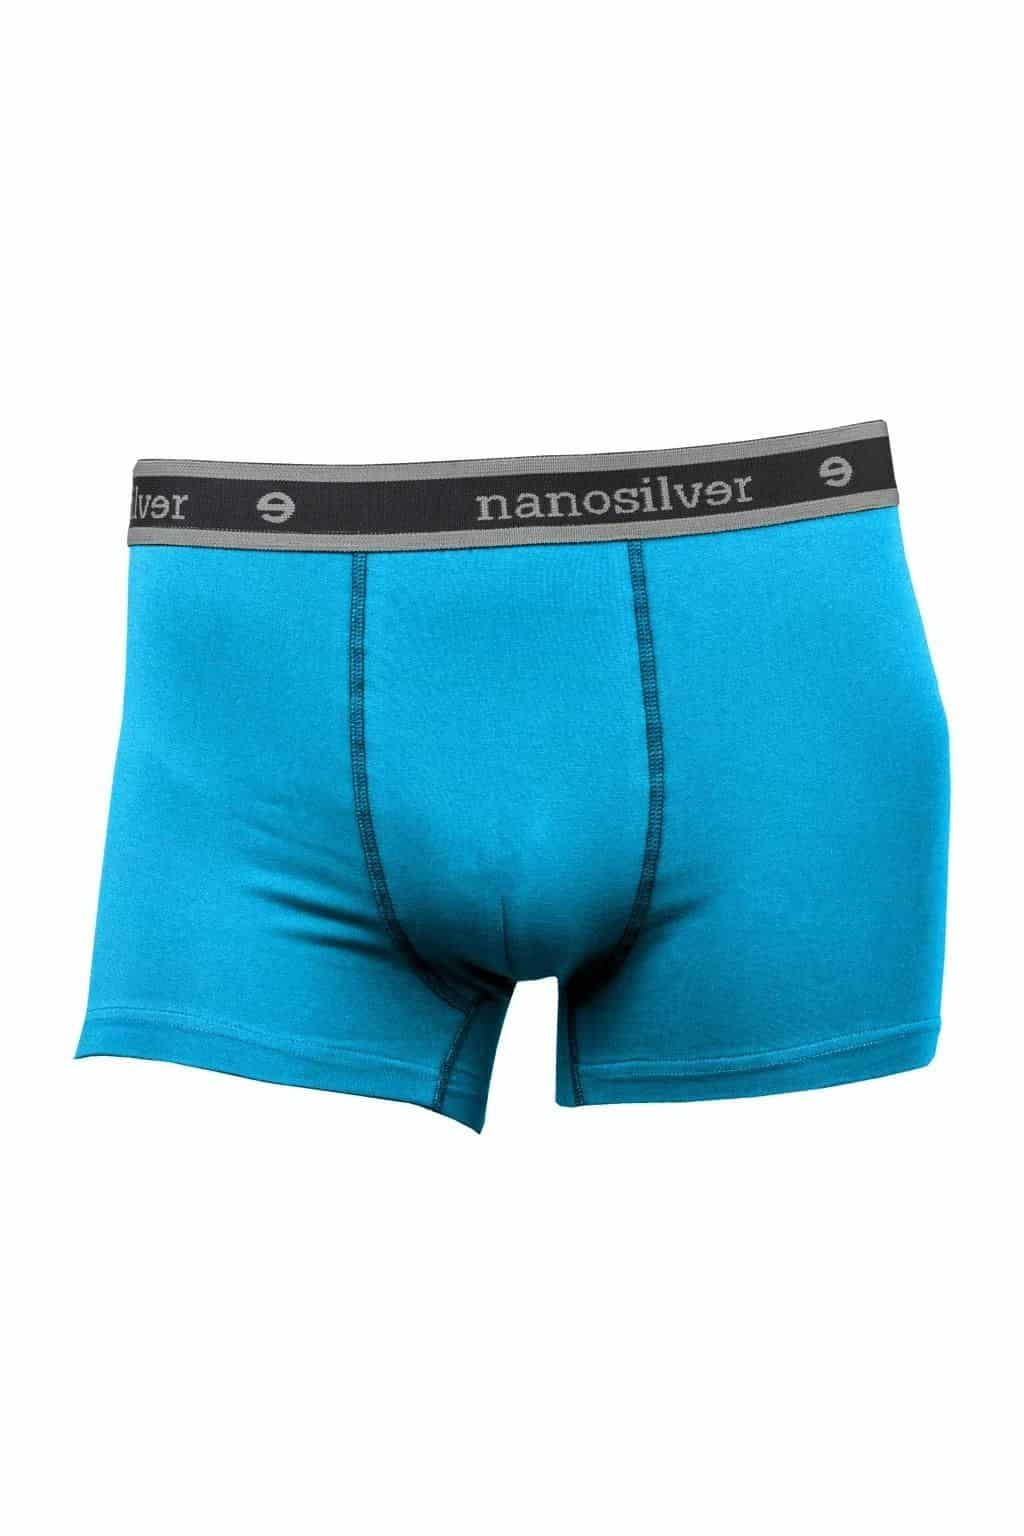 nanosilver® Nano boxerky s gumou nanosilver bez zadního švu – modré Velikost: L